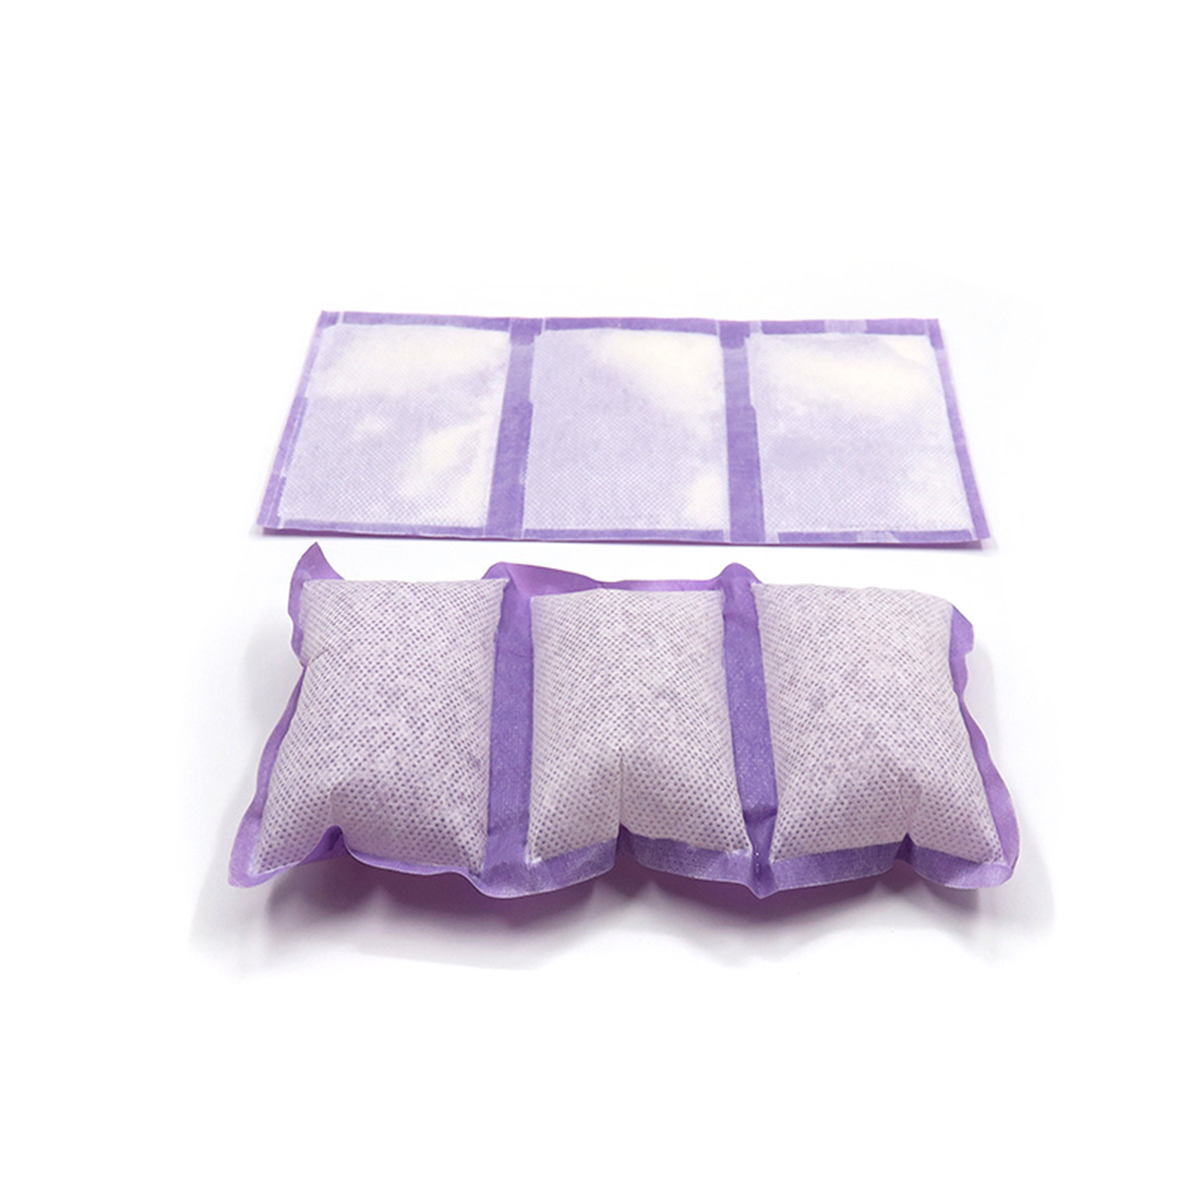 Tampon absorbant Tampon absorbant de haute qualité pour les tampons absorbants de fruits de poulet